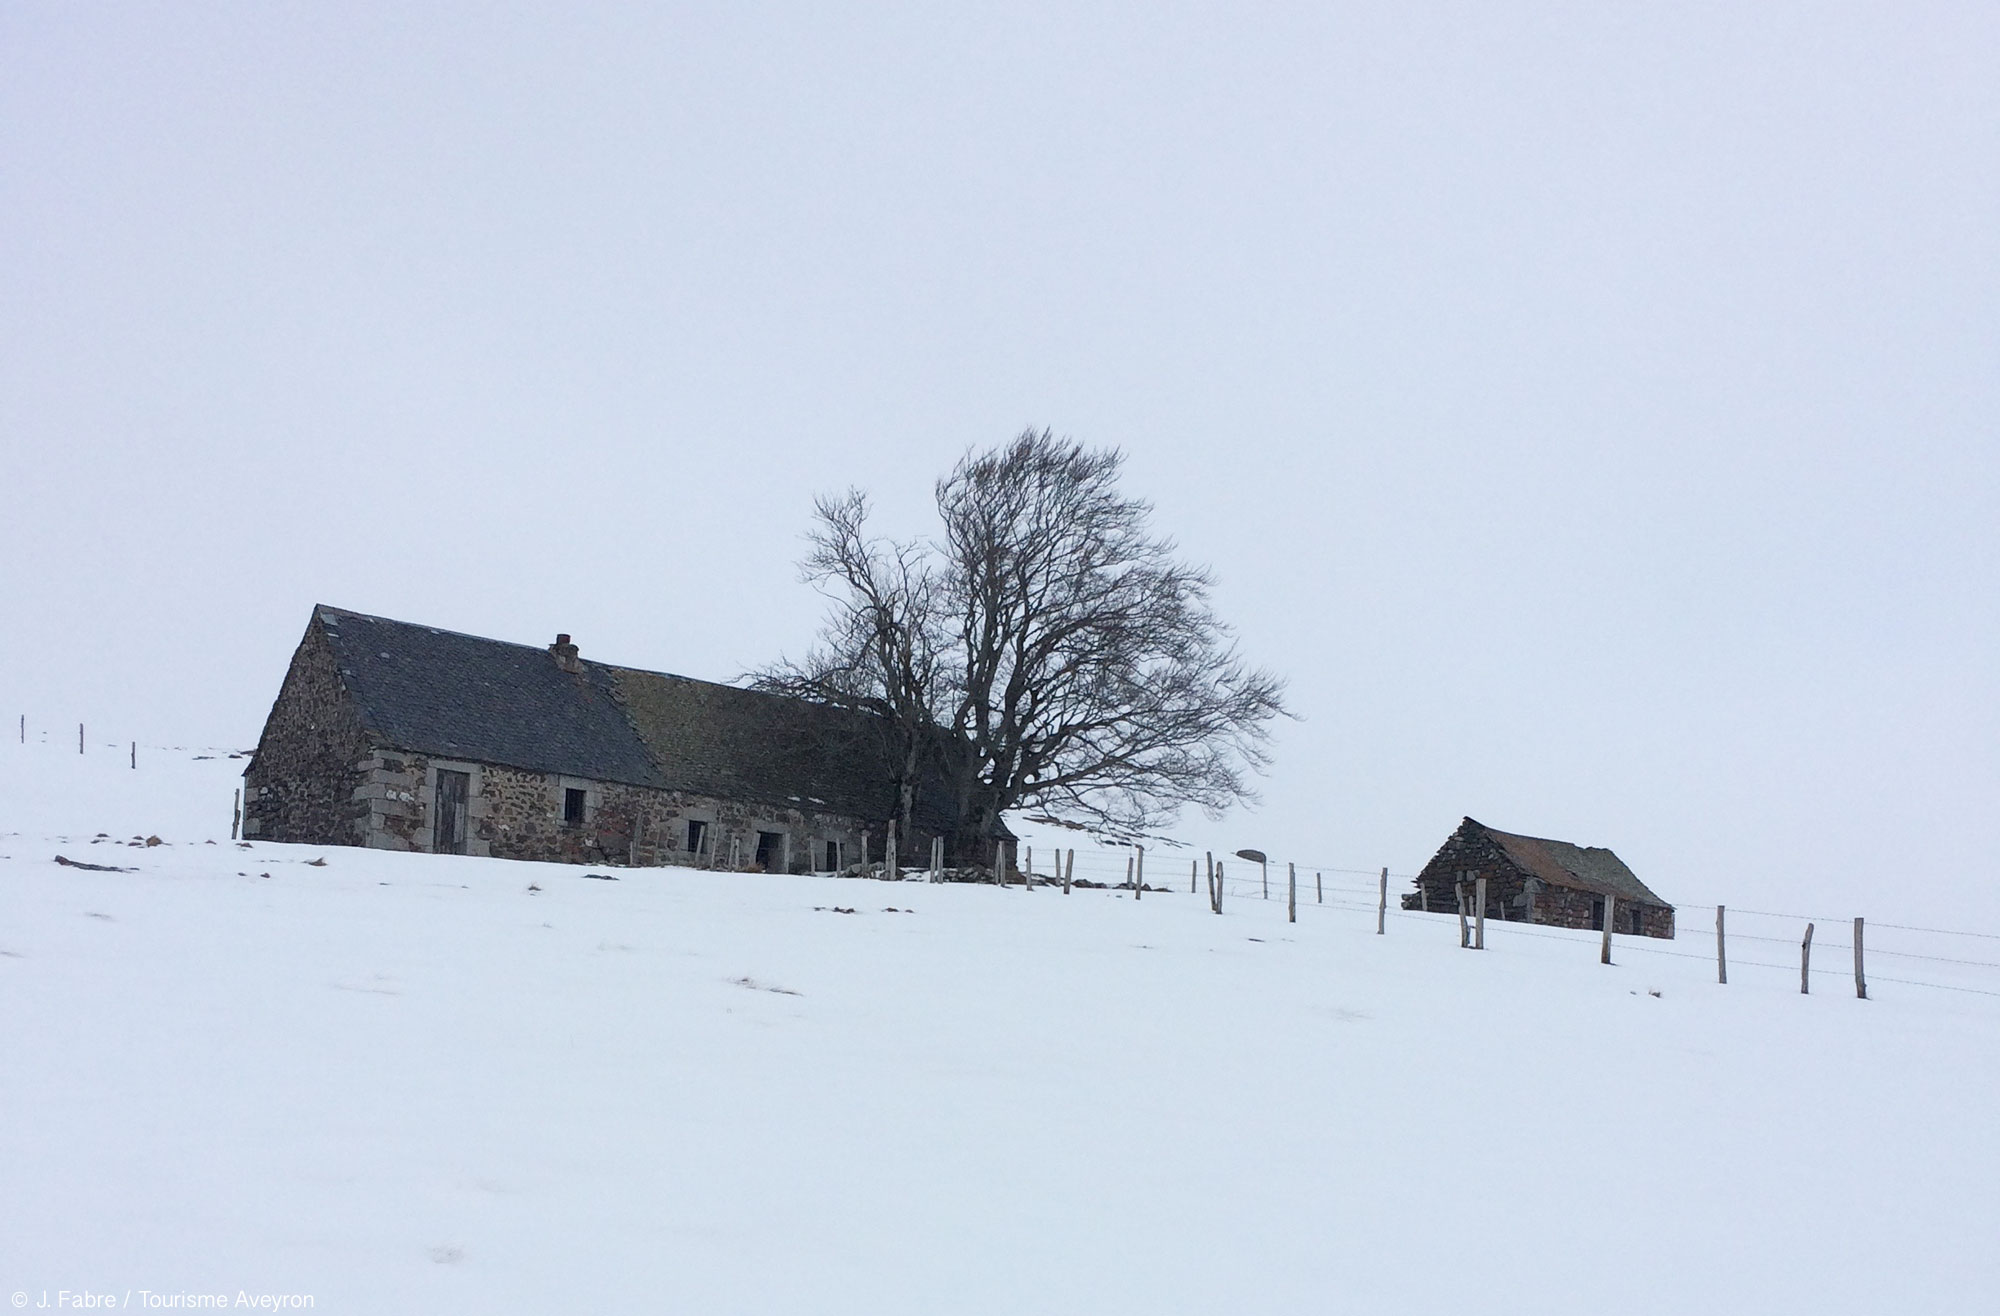 Aubrac sous la neige © J. Fabre - Tourisme Aveyron